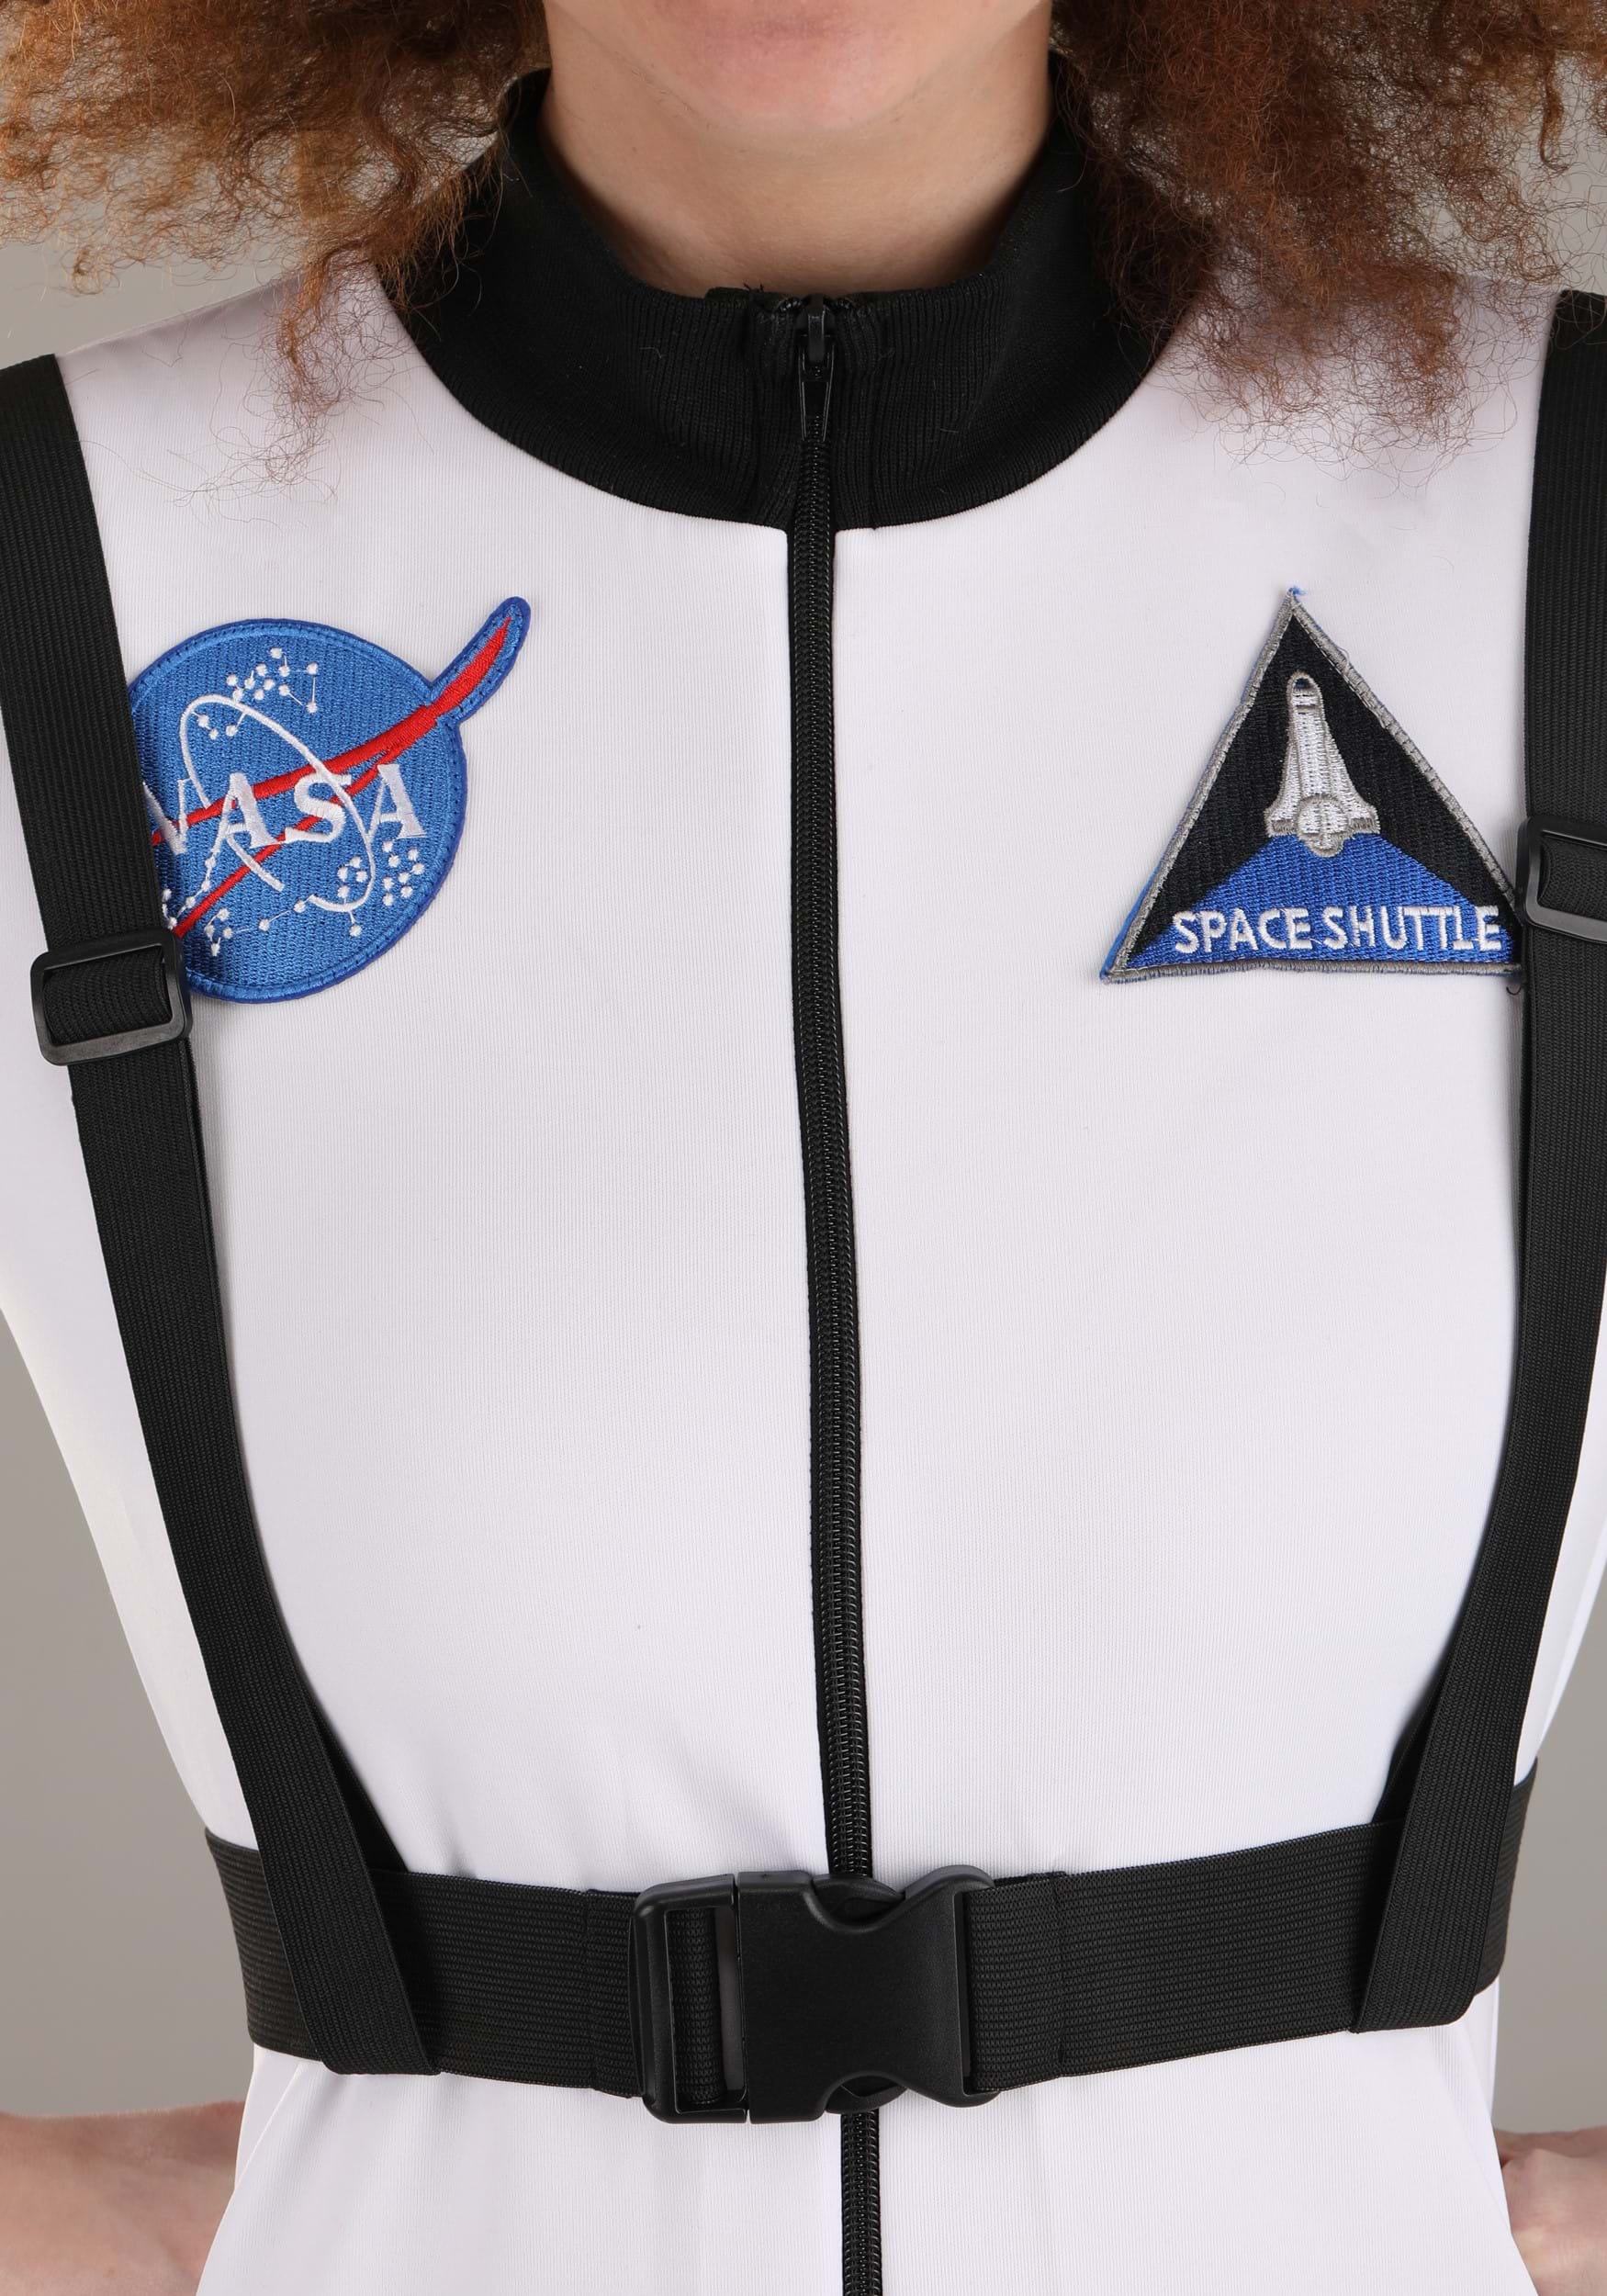 White Astronaut Women's Costume , Women's Halloween Costumes